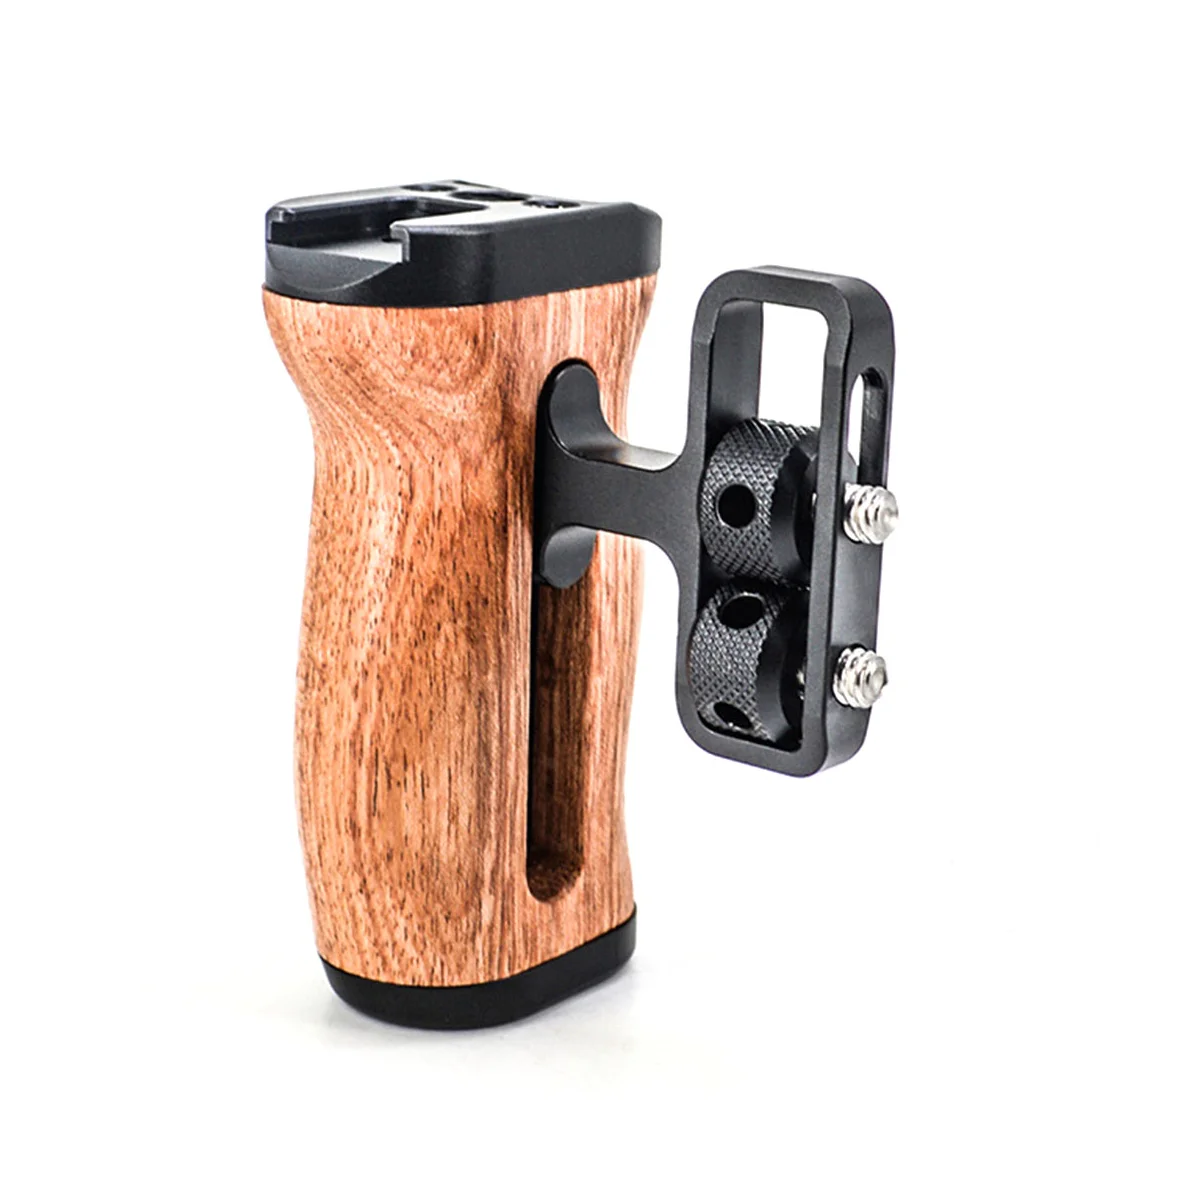 Многофункциональная камера, левая /правая боковая ручка для фоторазъема, Деревянная ручка, холодный башмак для микрофона, видеосветка.